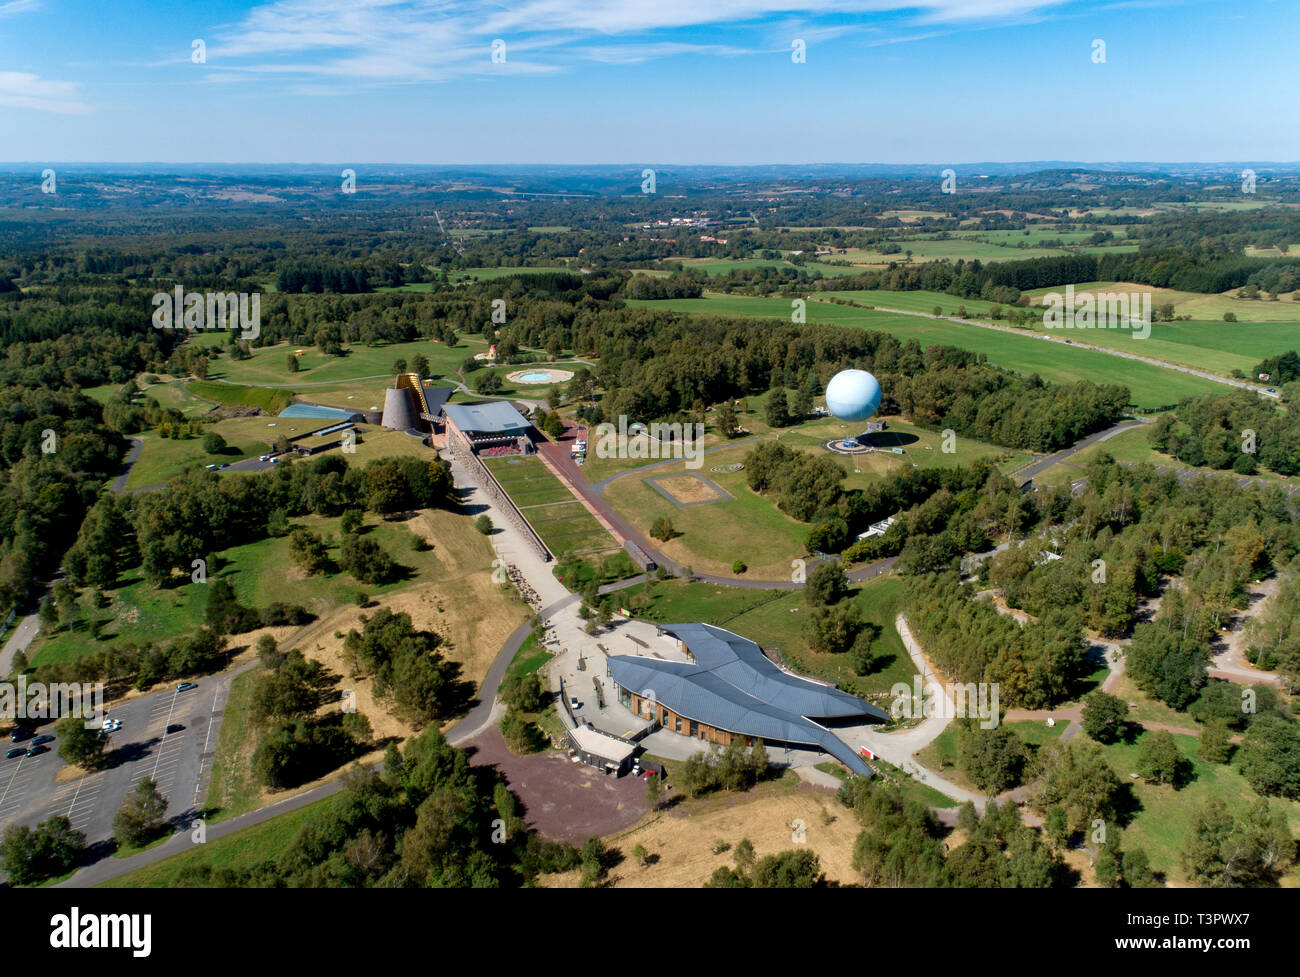 Antena vie de Vulcania, el parque europeo del vulcanismo '', en Saint-Ours-les-Roches (centro de Francia). Vulcania es un parque de atracciones educativas y mu Foto de stock